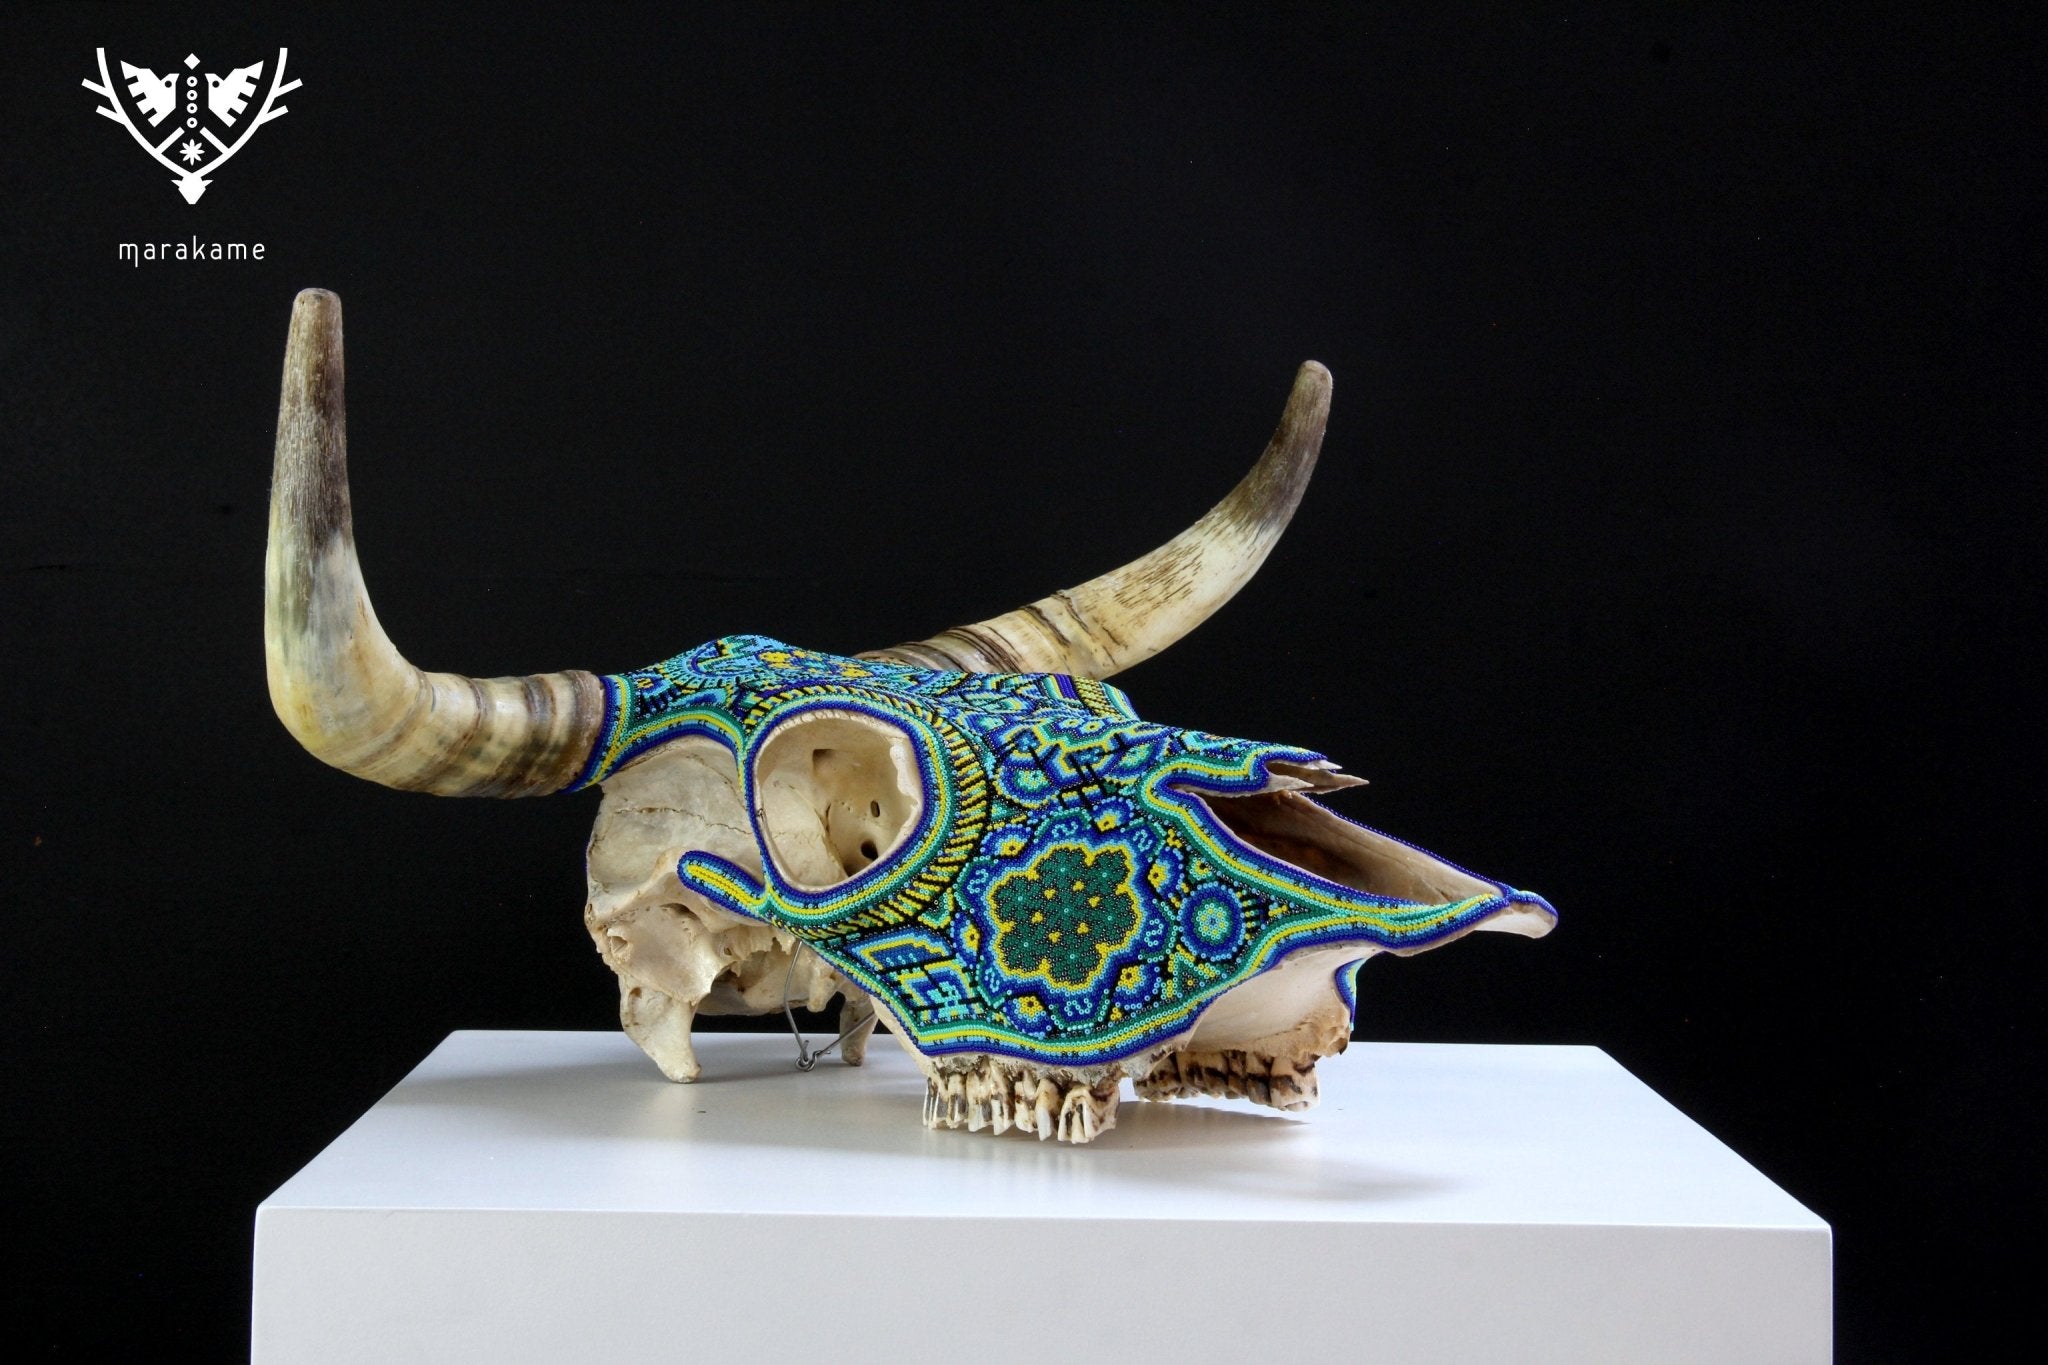 牛の頭蓋骨 ウイチョル族の芸術 - トゥトゥヌサ - ウイチョル族の芸術 - マラカメ